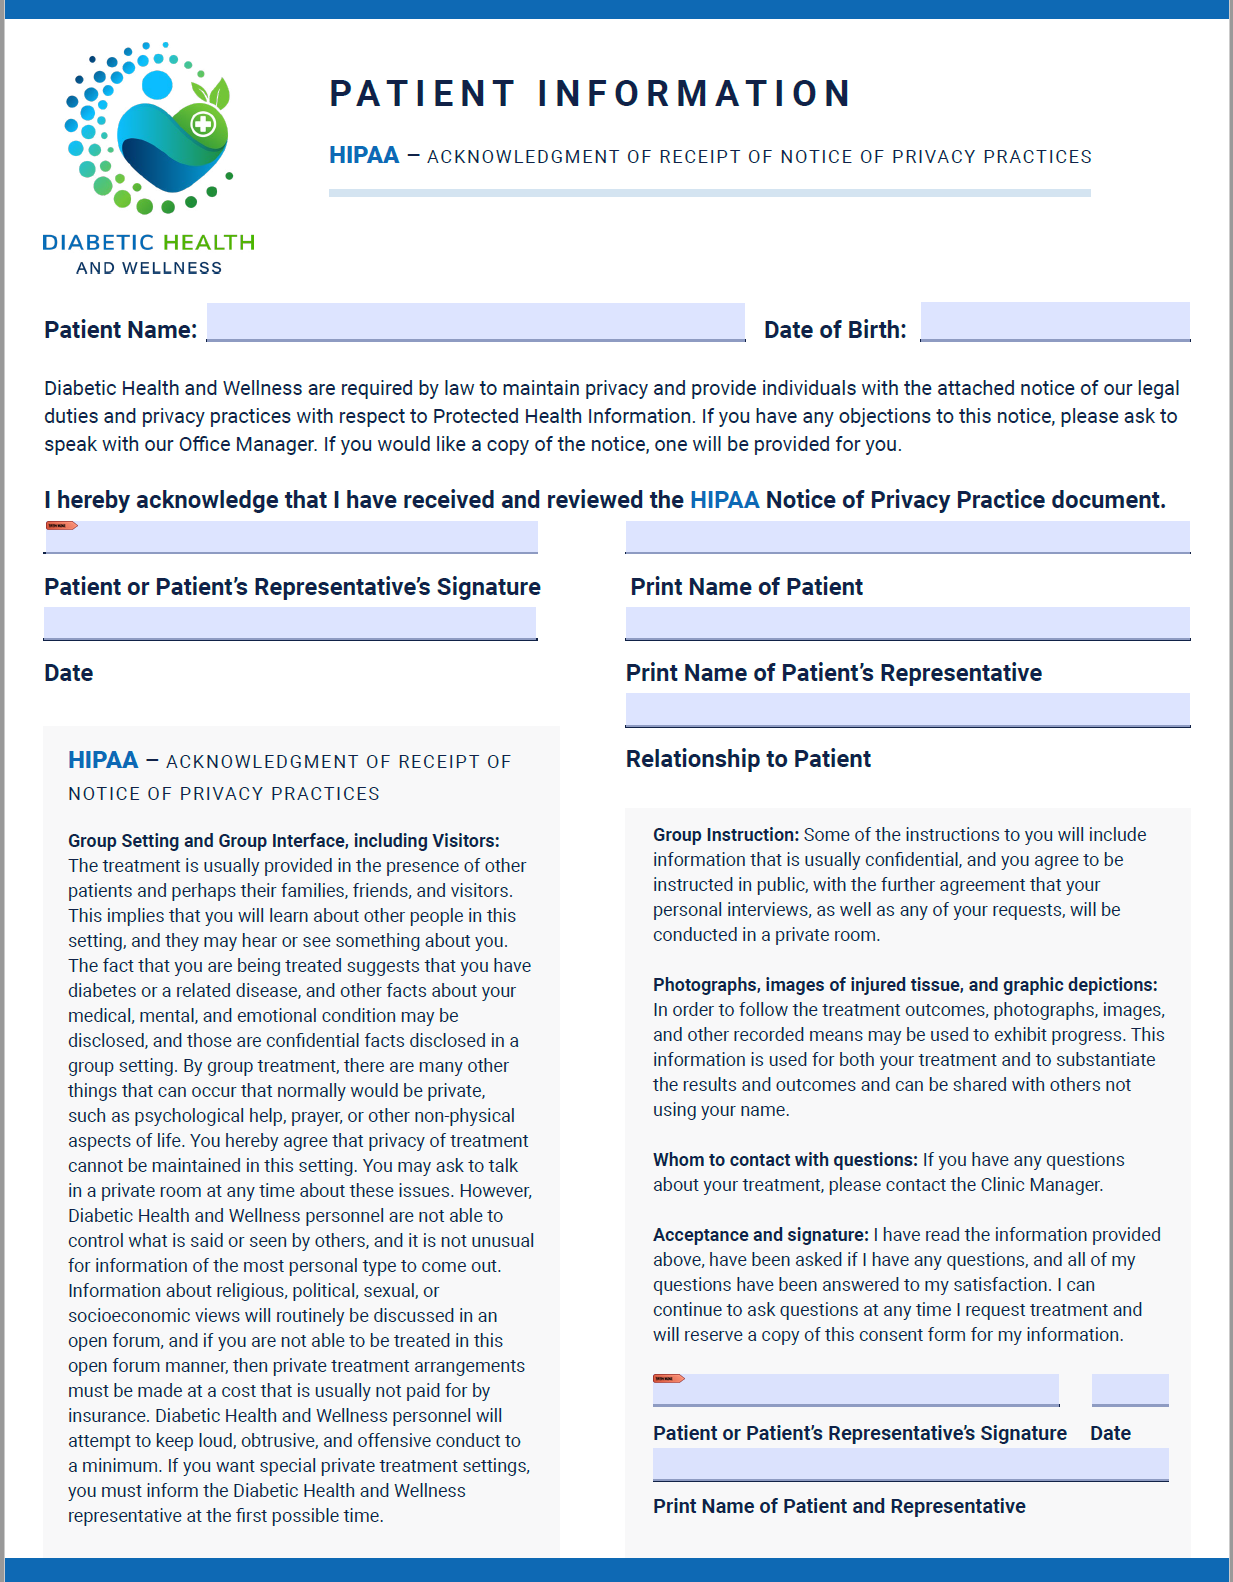 Patient Form - Patient Information / HIPPA Form